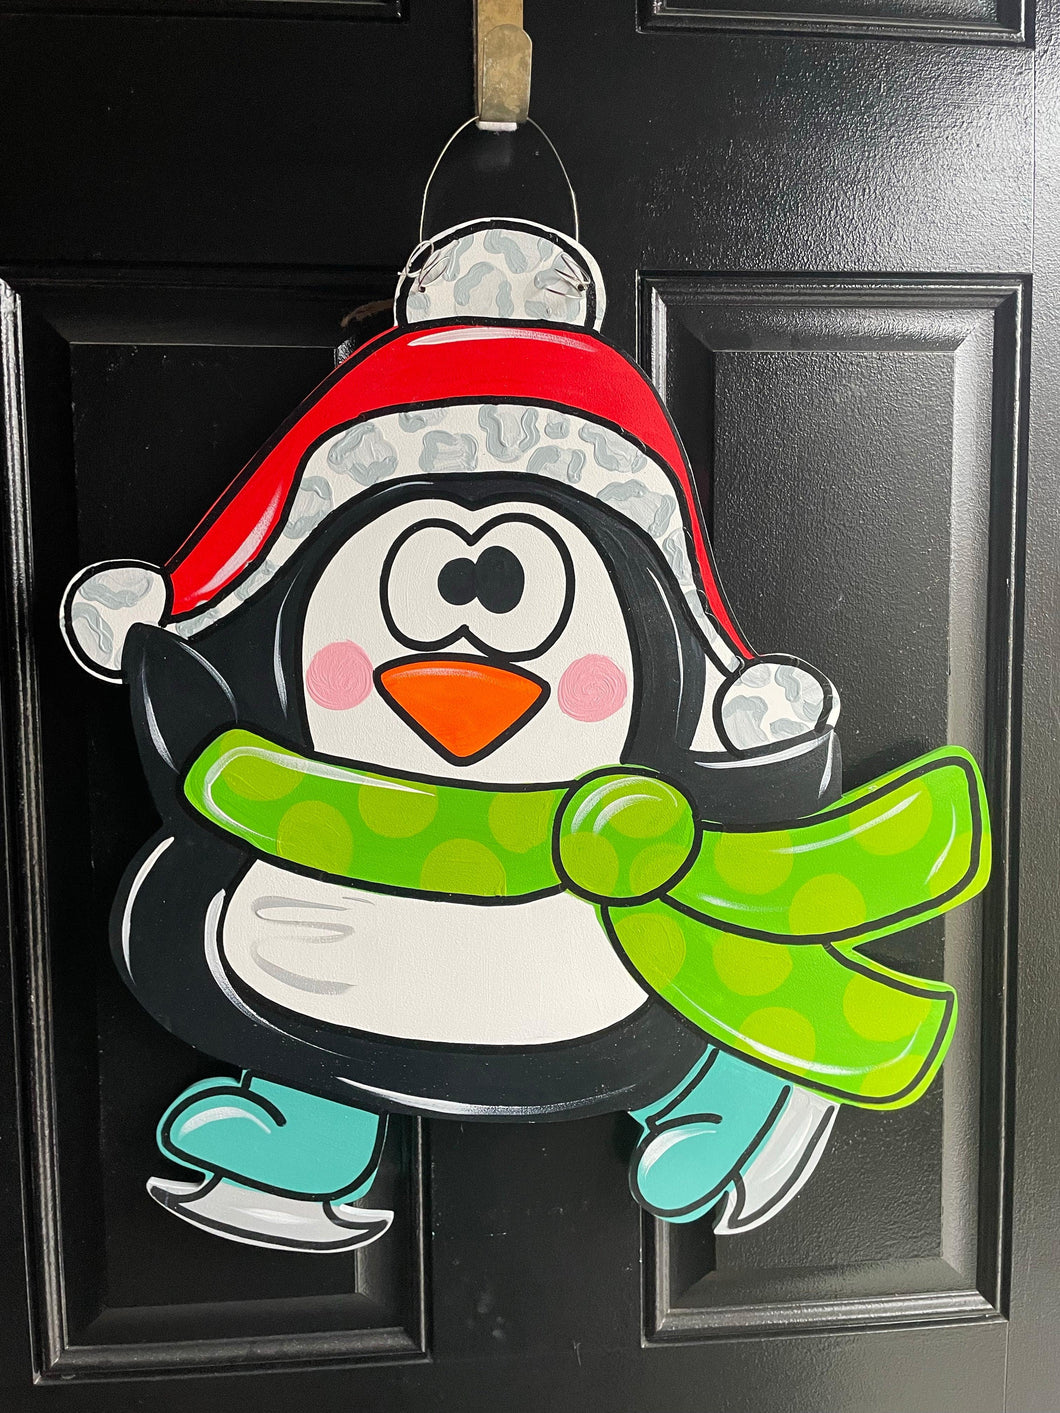 Penguin on skates Door Hanger - Colorful Winter Door Decoration - DoorBadges